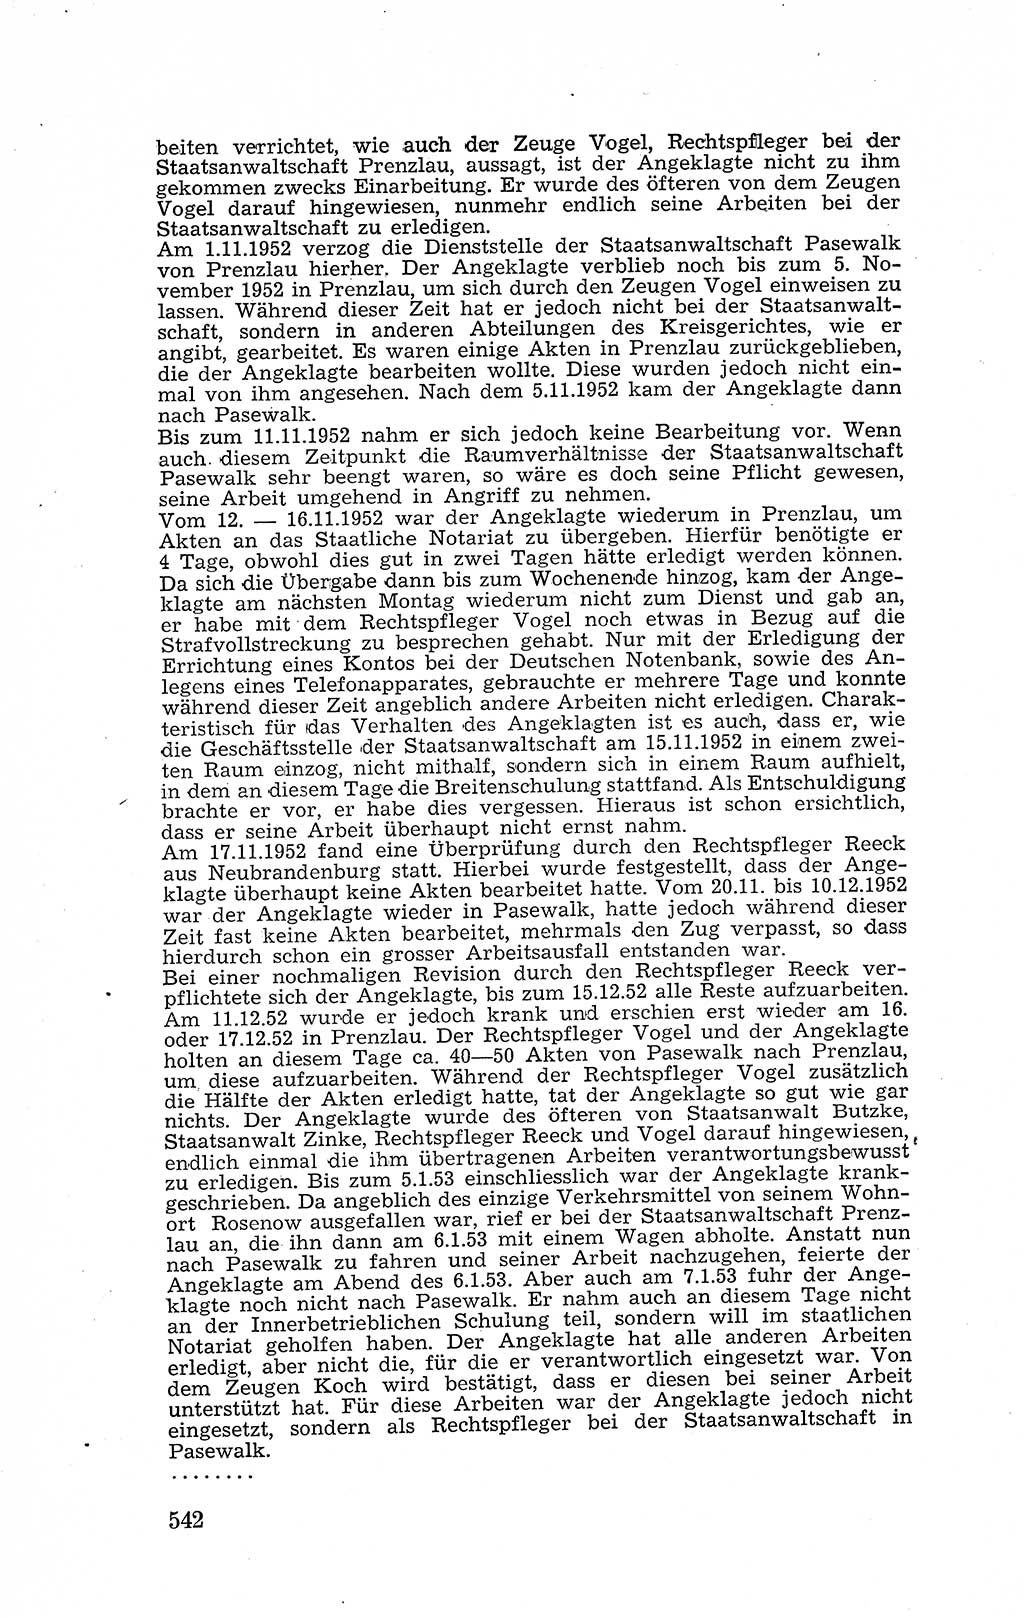 Recht in Fesseln, Dokumente, Internationale Juristen-Kommission [Bundesrepublik Deutschland (BRD)] 1955, Seite 542 (R. Dok. IJK BRD 1955, S. 542)